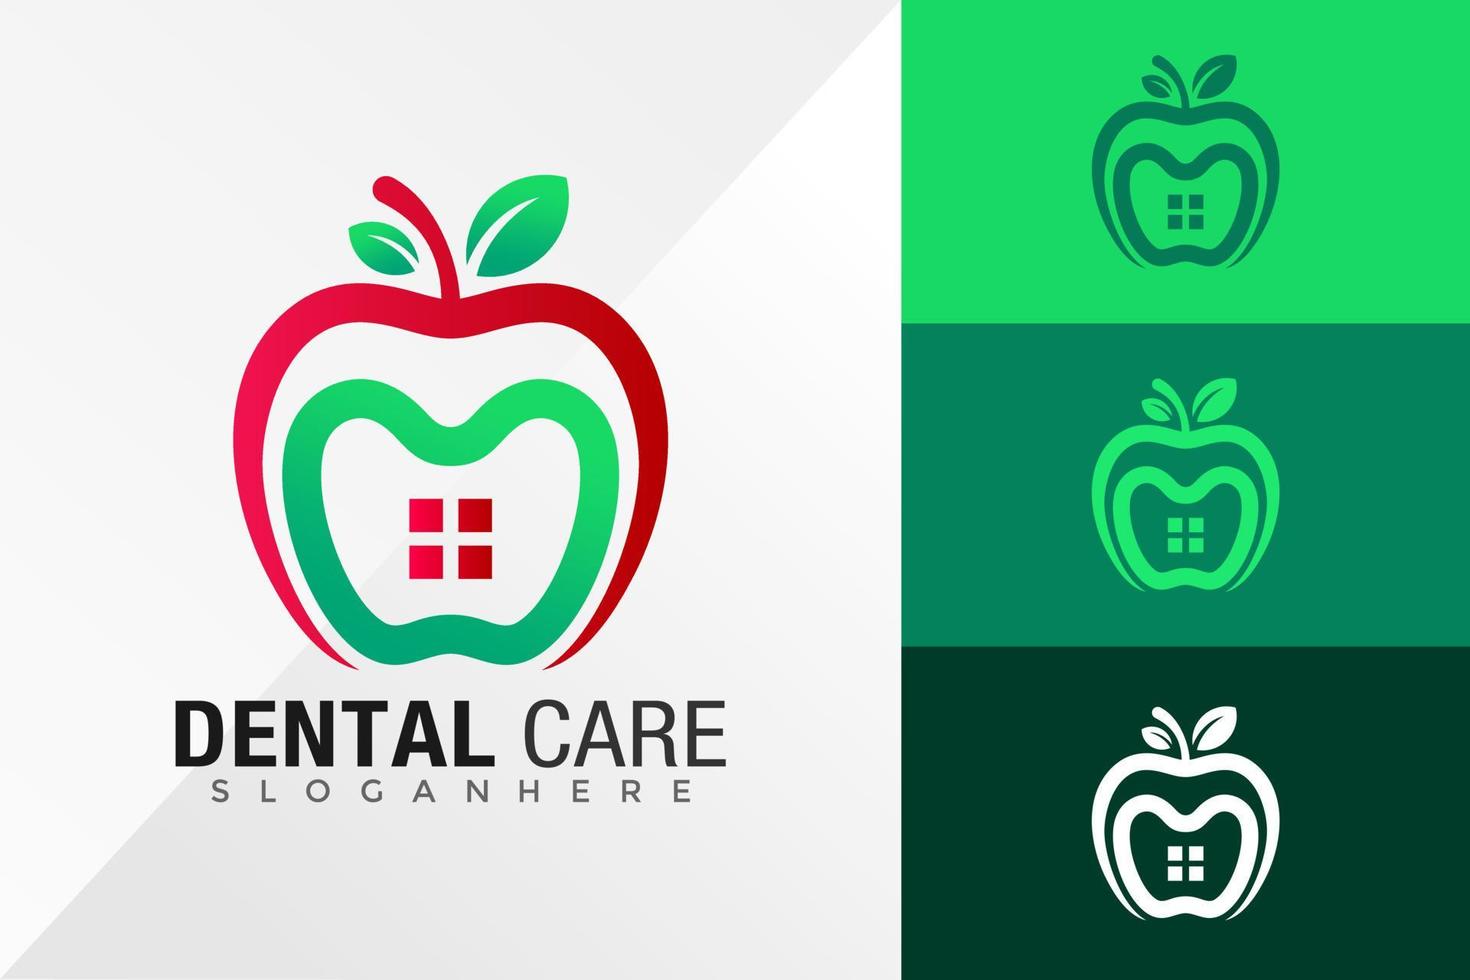 Apple House soins dentaires logo design modèle d'illustration vectorielle vecteur